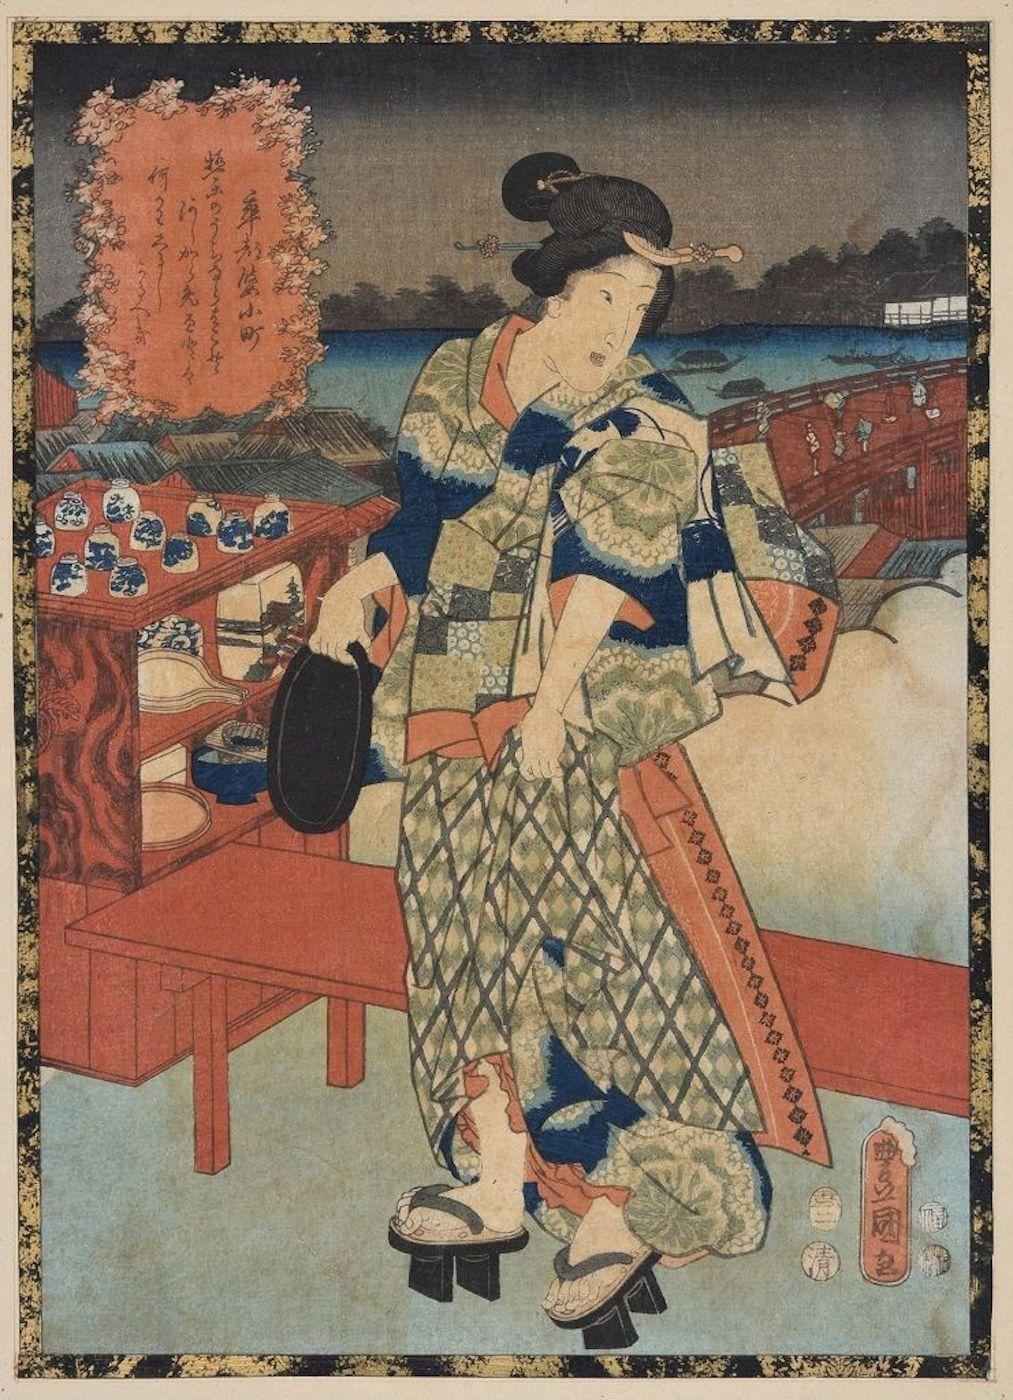 Utagawa Kunisada (Toyokuni III) Figurative Print - Sotoba Komachi - Original Woodcut by Utagawa Kunisada - 1840s